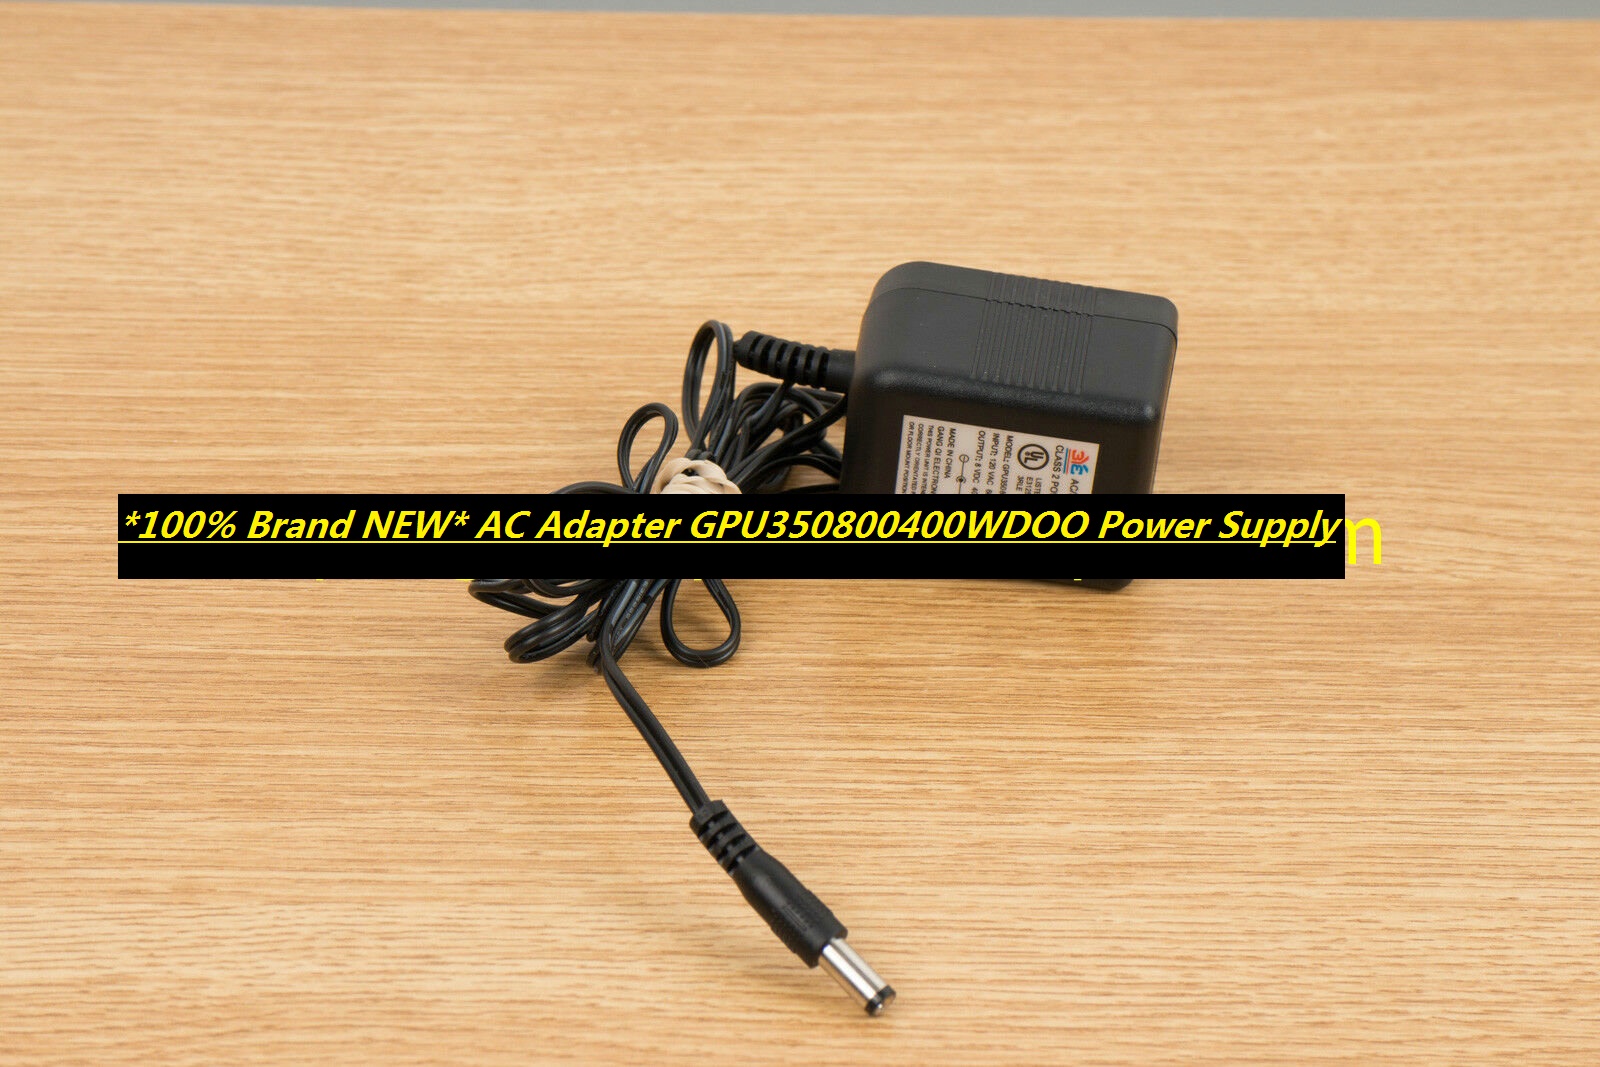 *100% Brand NEW* AC Adapter GPU350800400WDOO Power Supply